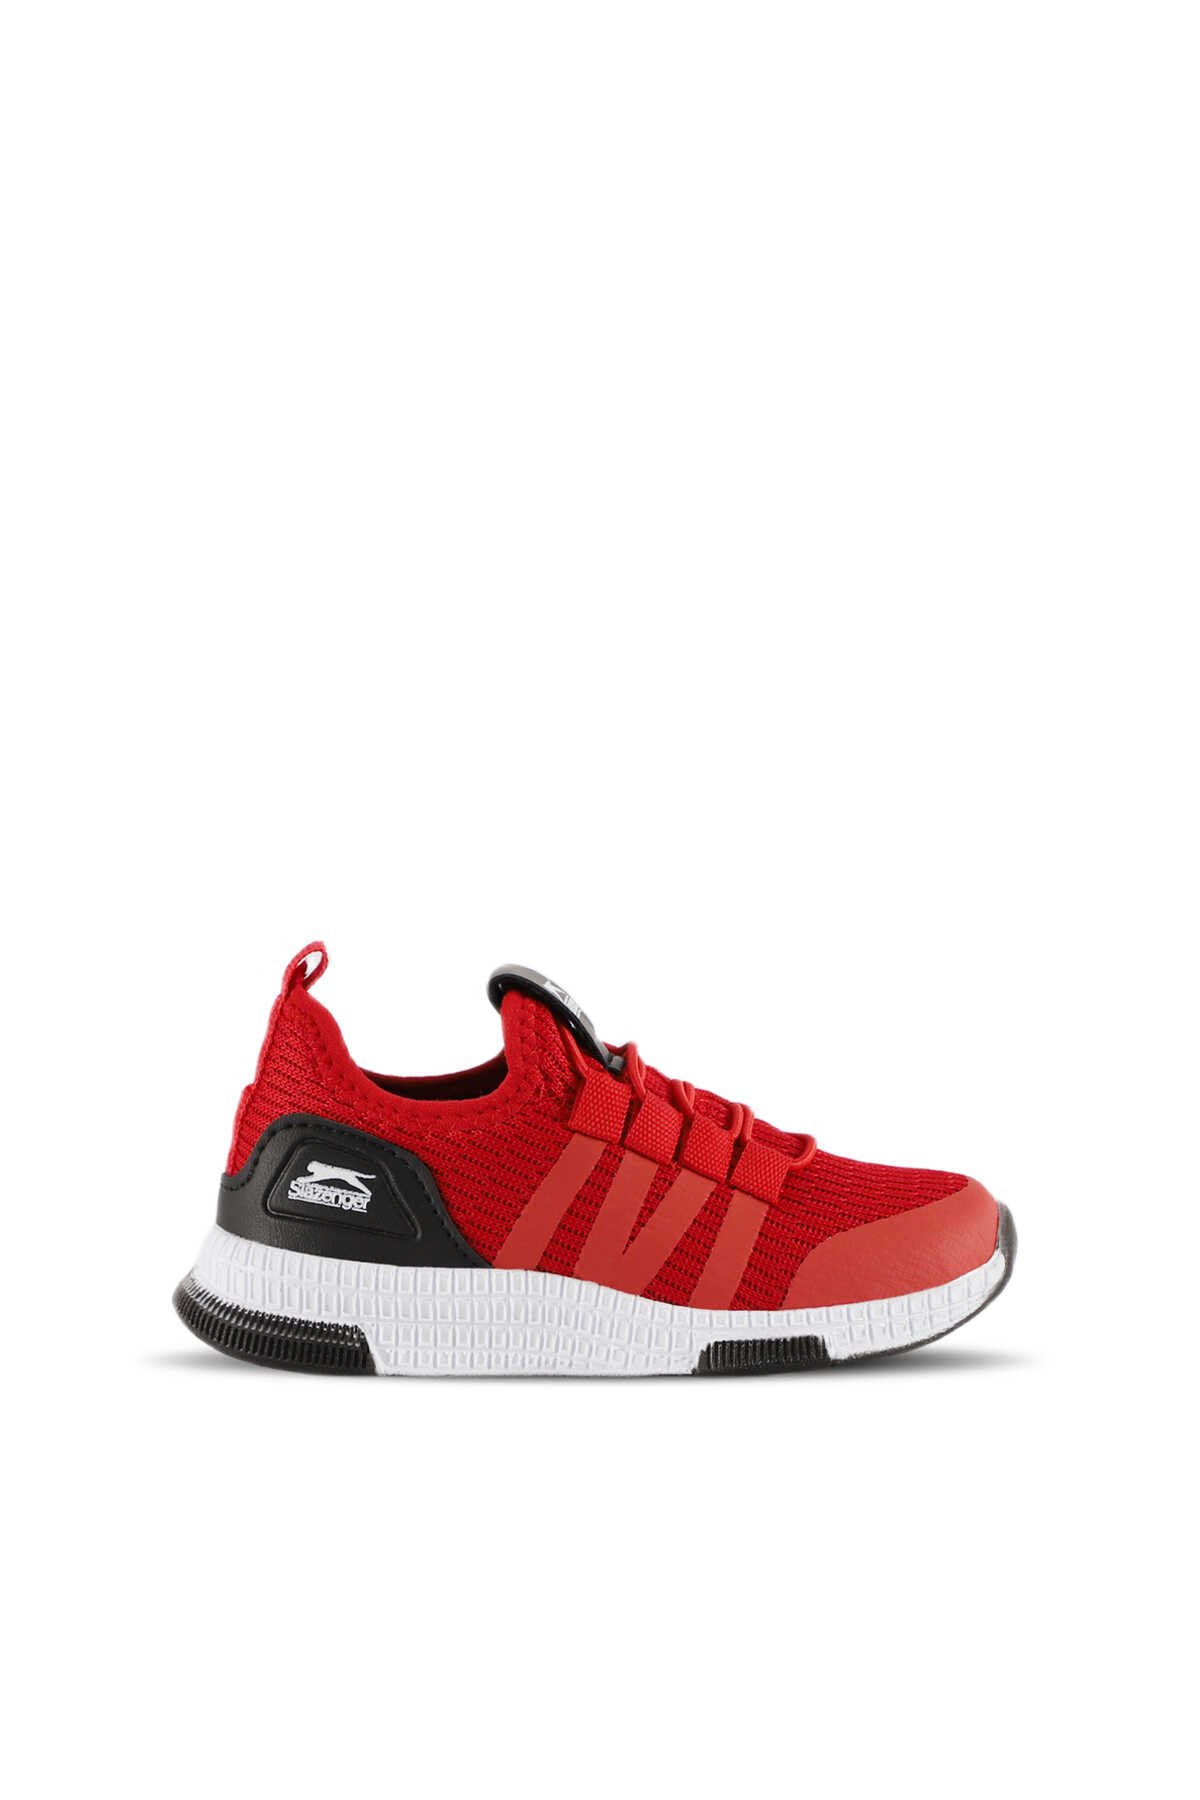 Slazenger - Slazenger EXPO Sneaker Erkek Çocuk Ayakkabı Kırmızı / Siyah